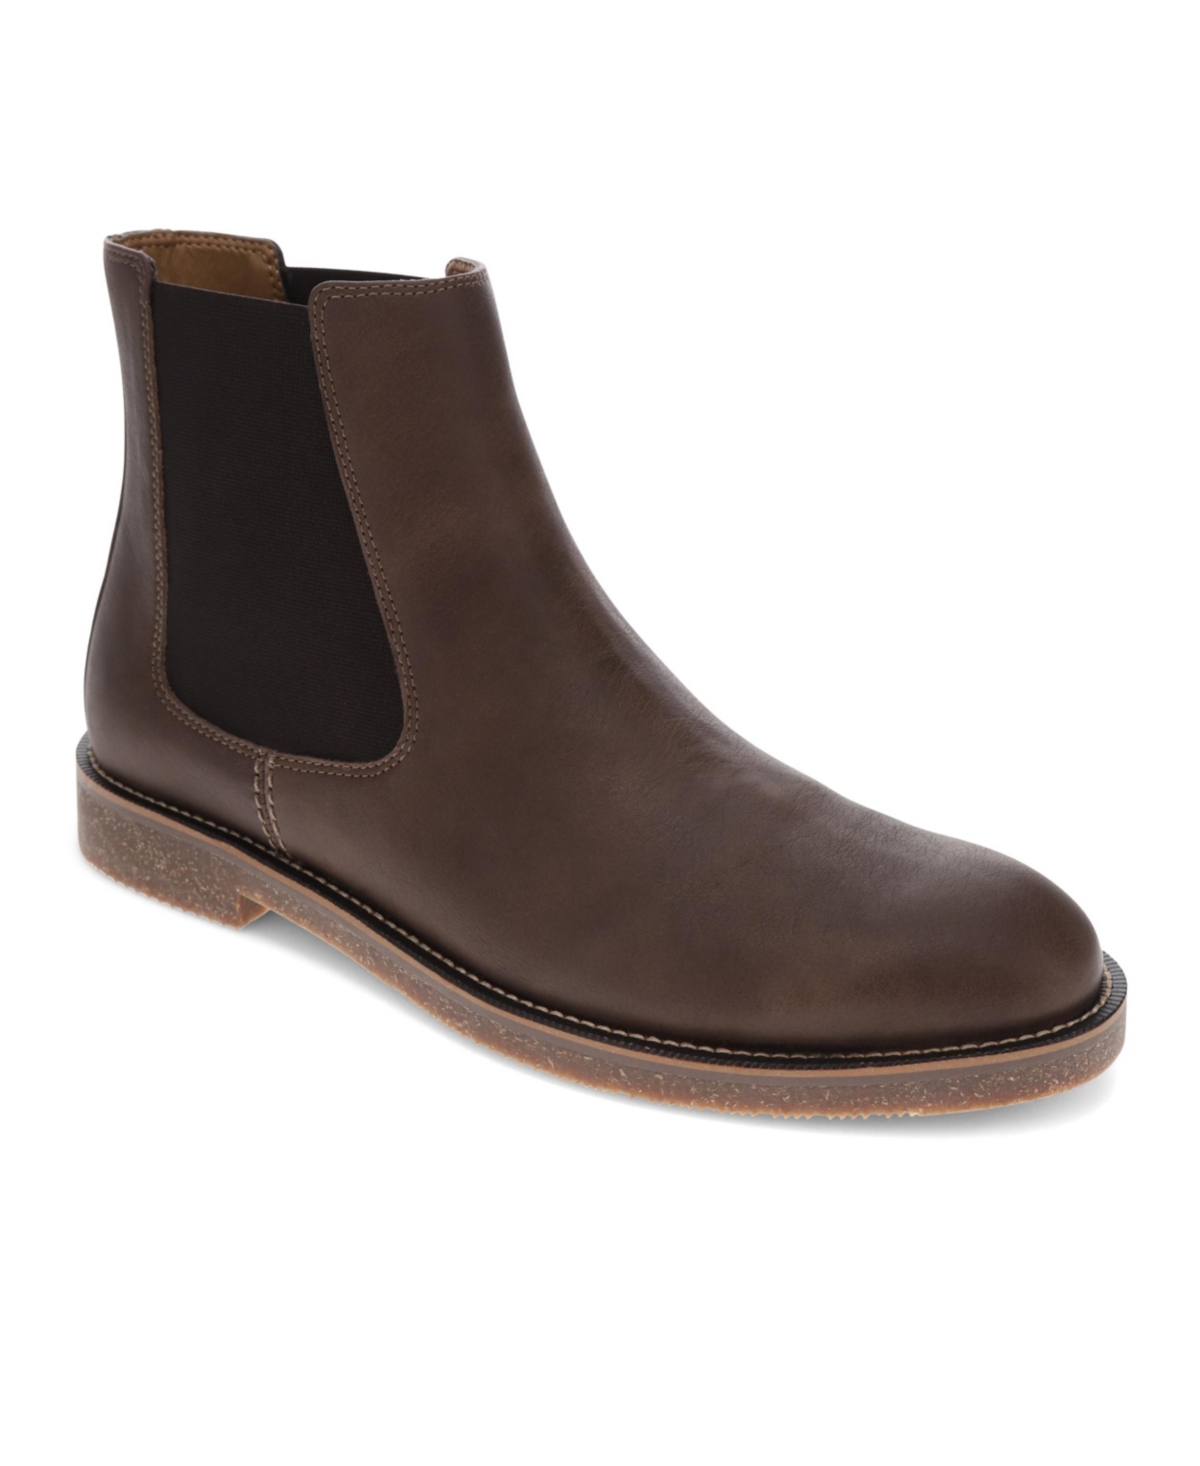 Men's Novato Comfort Boots - Dark Brown